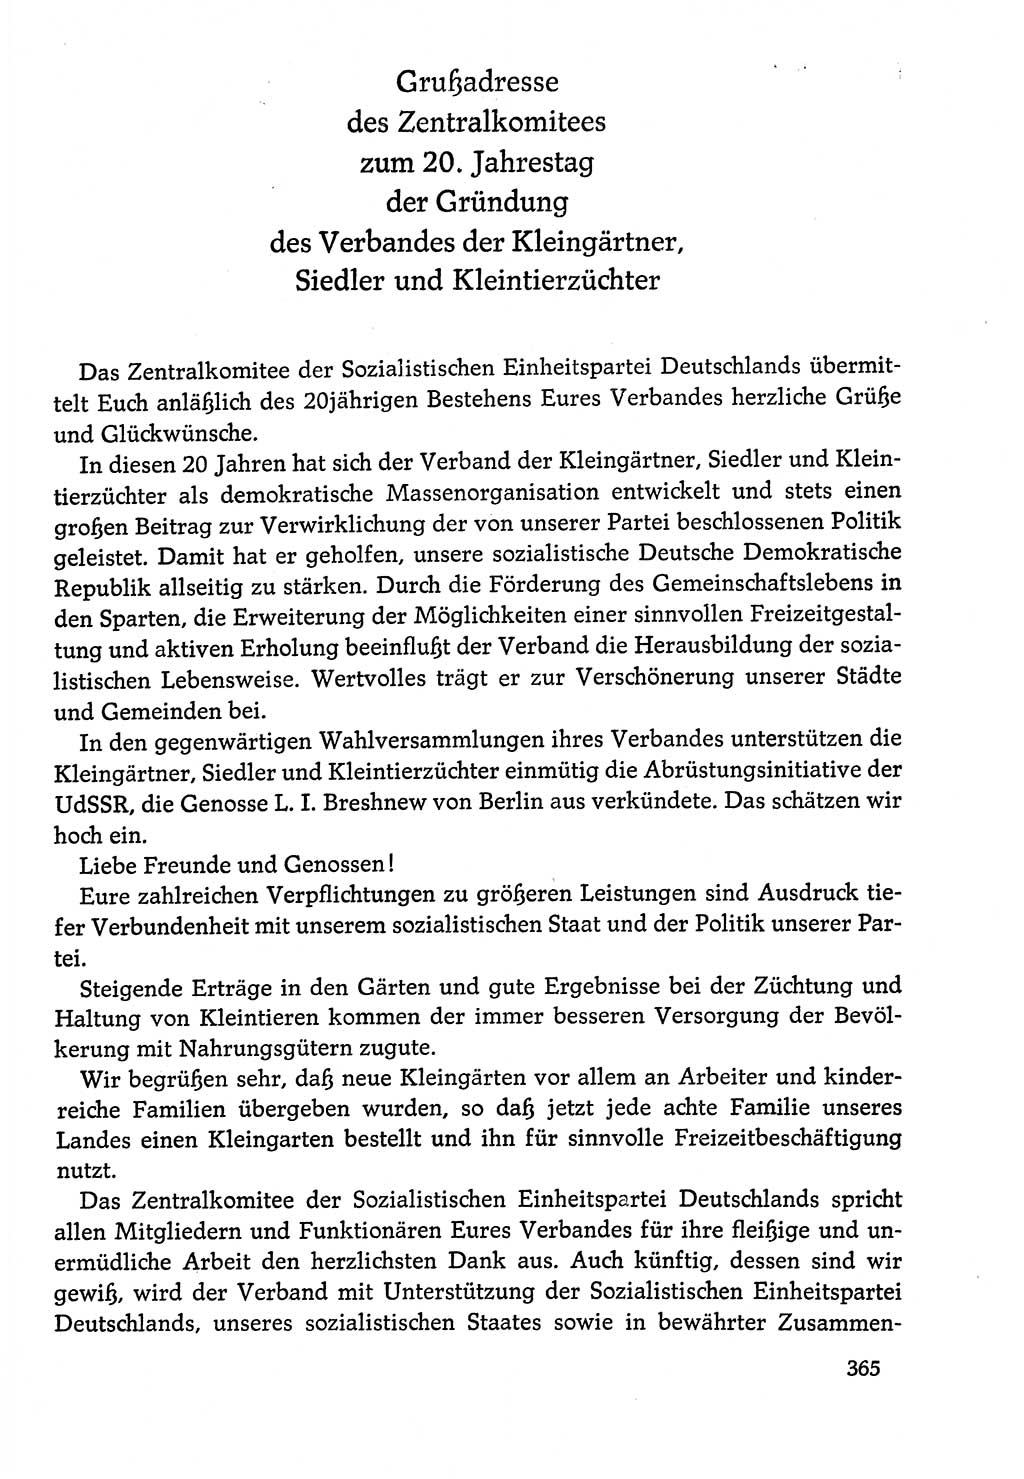 Dokumente der Sozialistischen Einheitspartei Deutschlands (SED) [Deutsche Demokratische Republik (DDR)] 1978-1979, Seite 365 (Dok. SED DDR 1978-1979, S. 365)